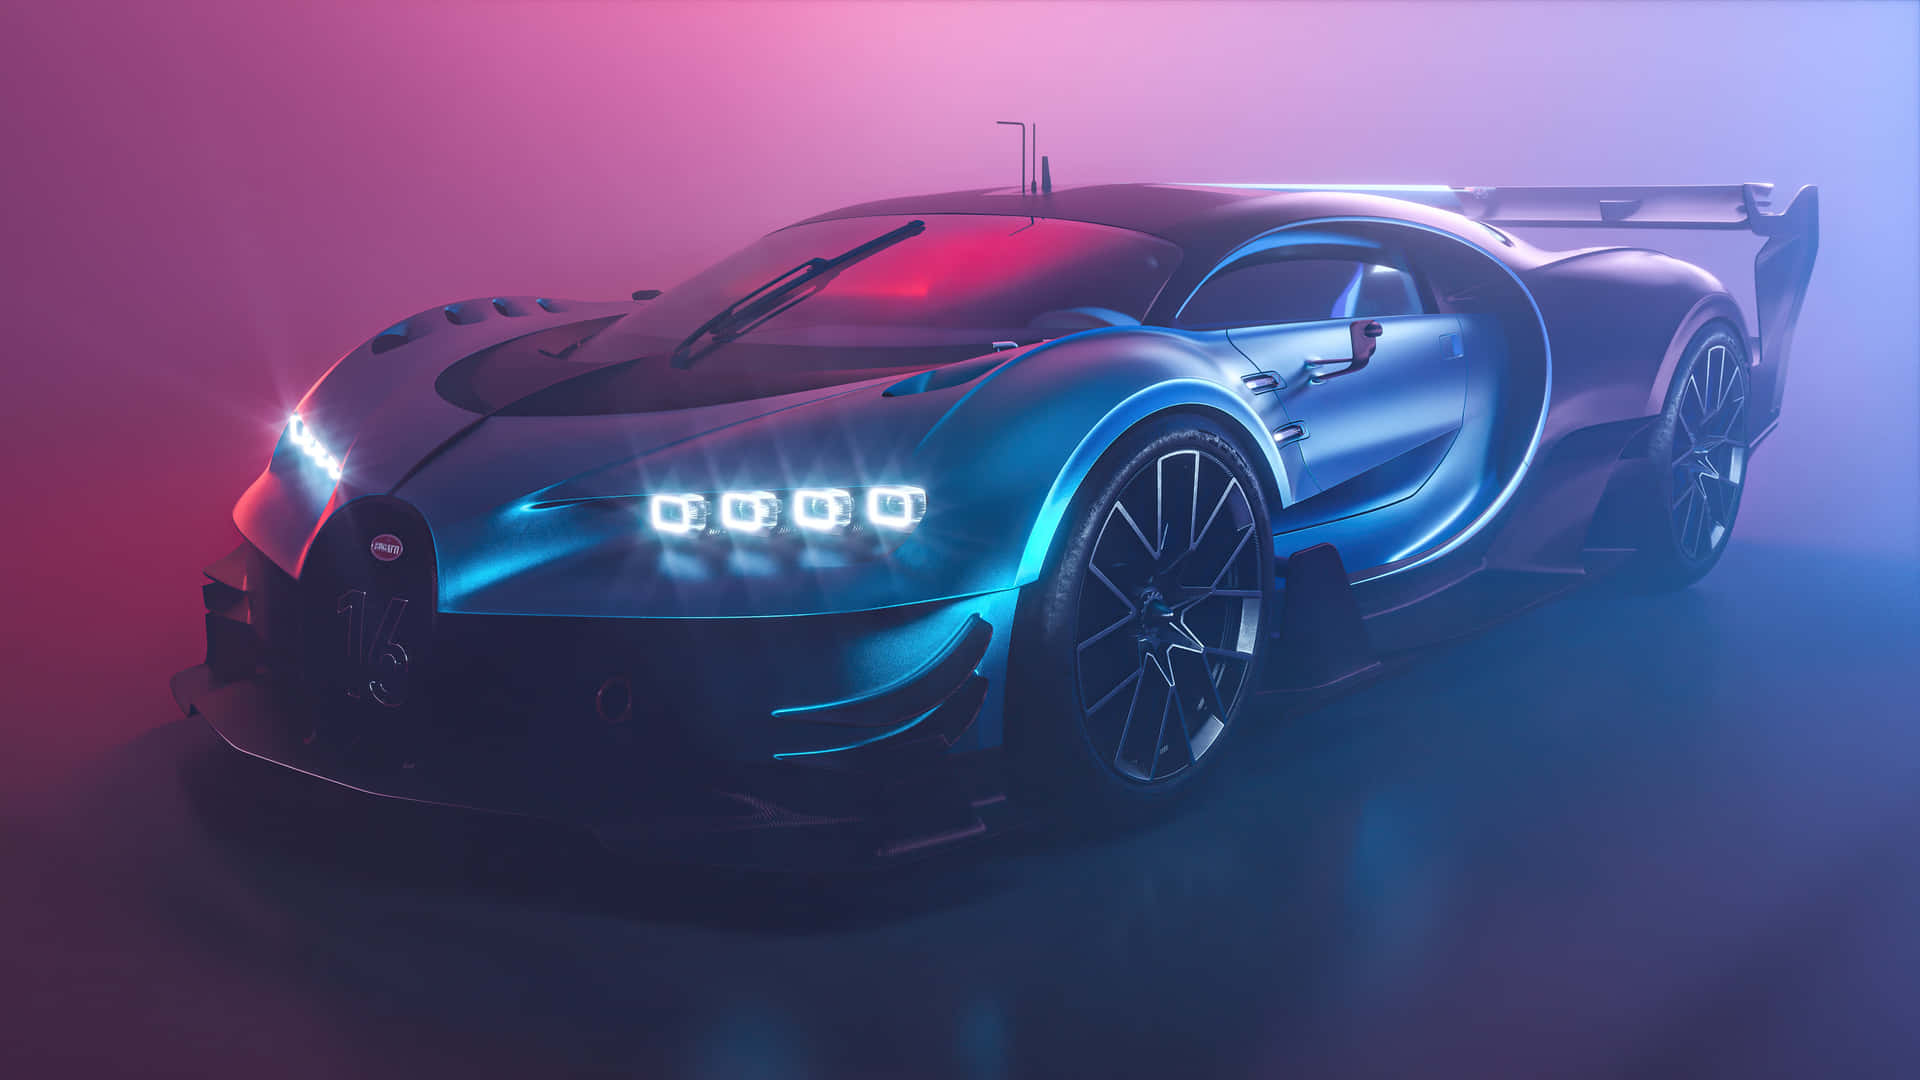 Neon Bugatti 5120 X 2879 Wallpaper